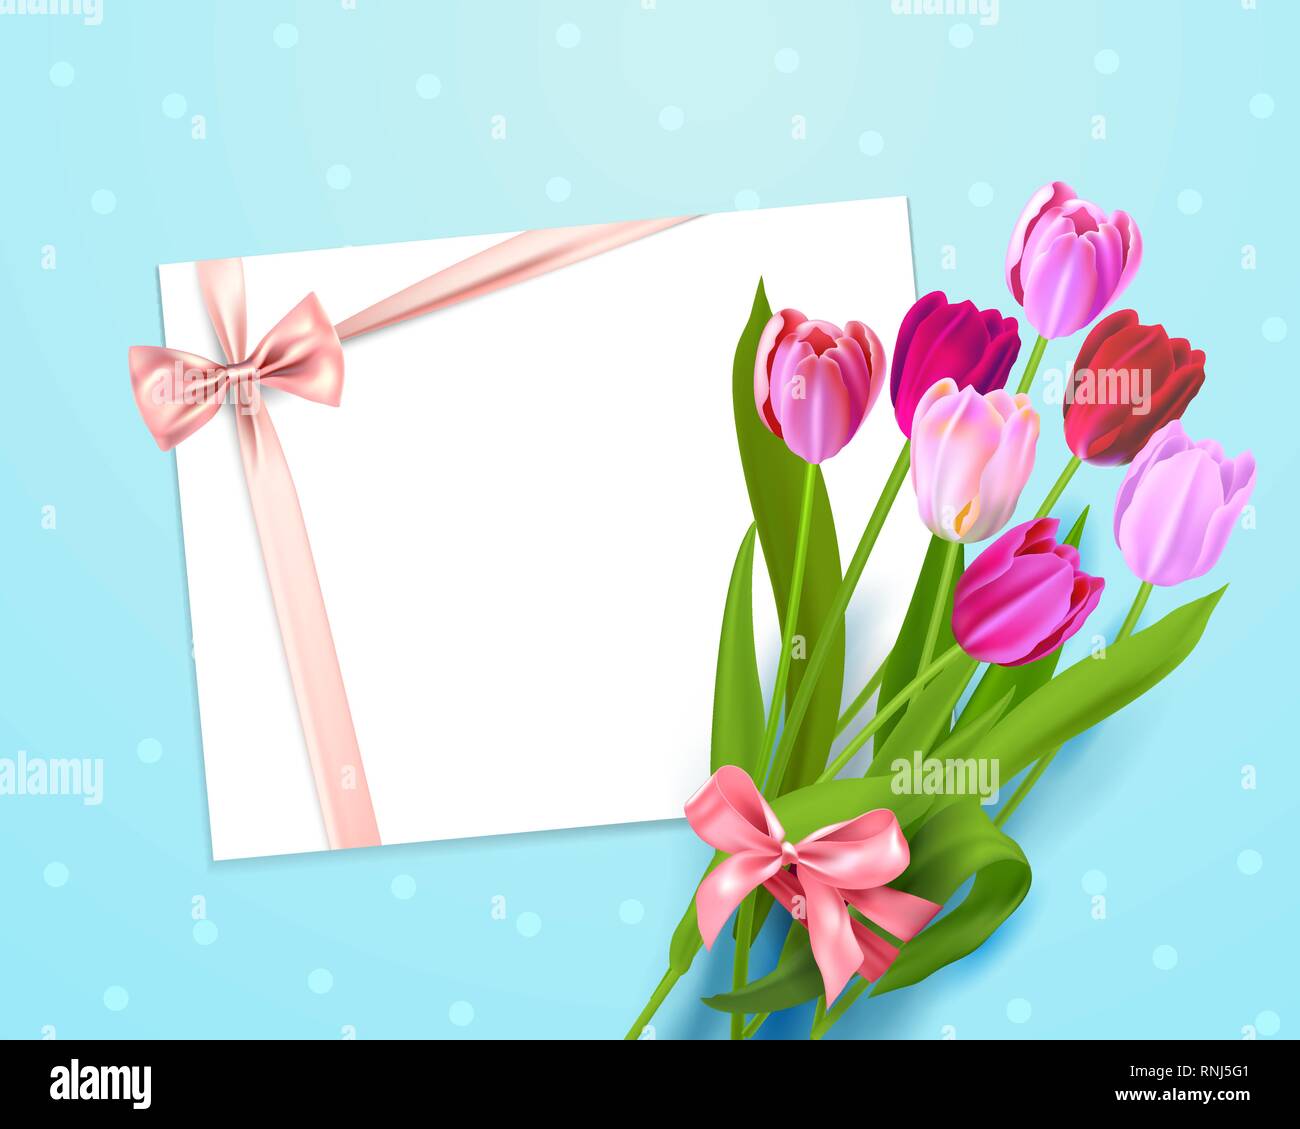 Realistische Vektor bunte Tulpen Hintergrund. Frühling Blumen und Urlaub Karte mit Platz für Text. Stock Vektor